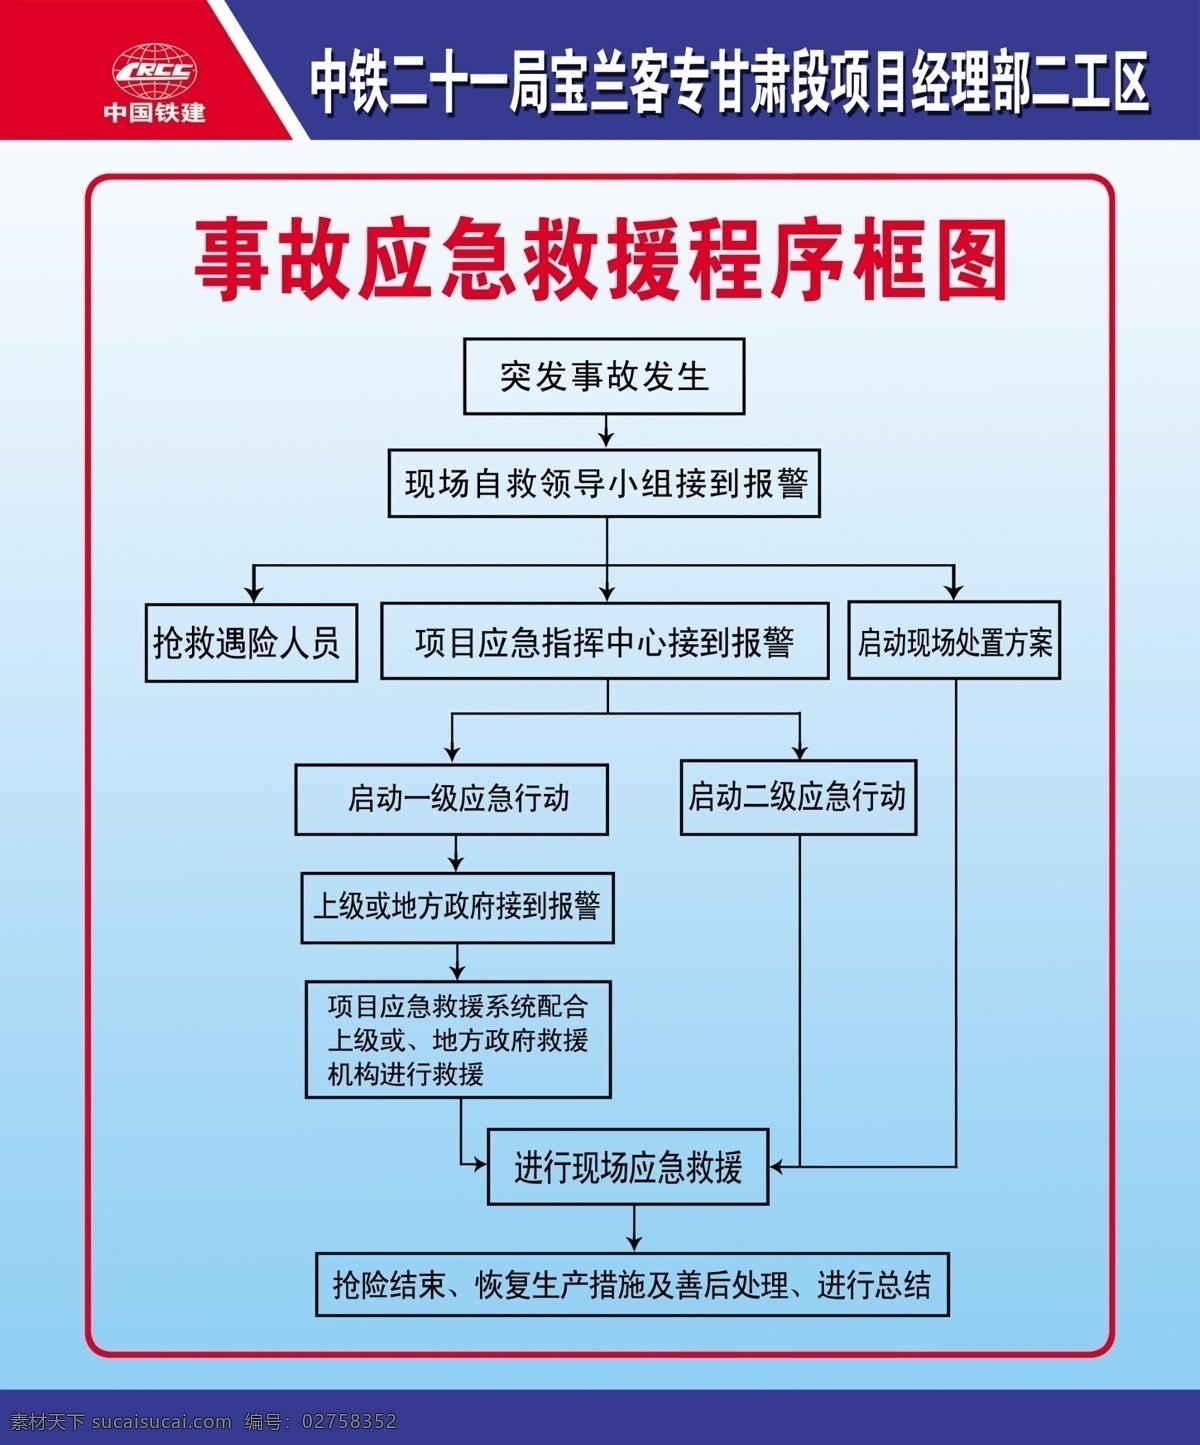 事故 应急 救援 程序 框图 中国铁建 应急救援 程序框图 制度牌 中铁二十一局 展板模板 广告设计模板 源文件